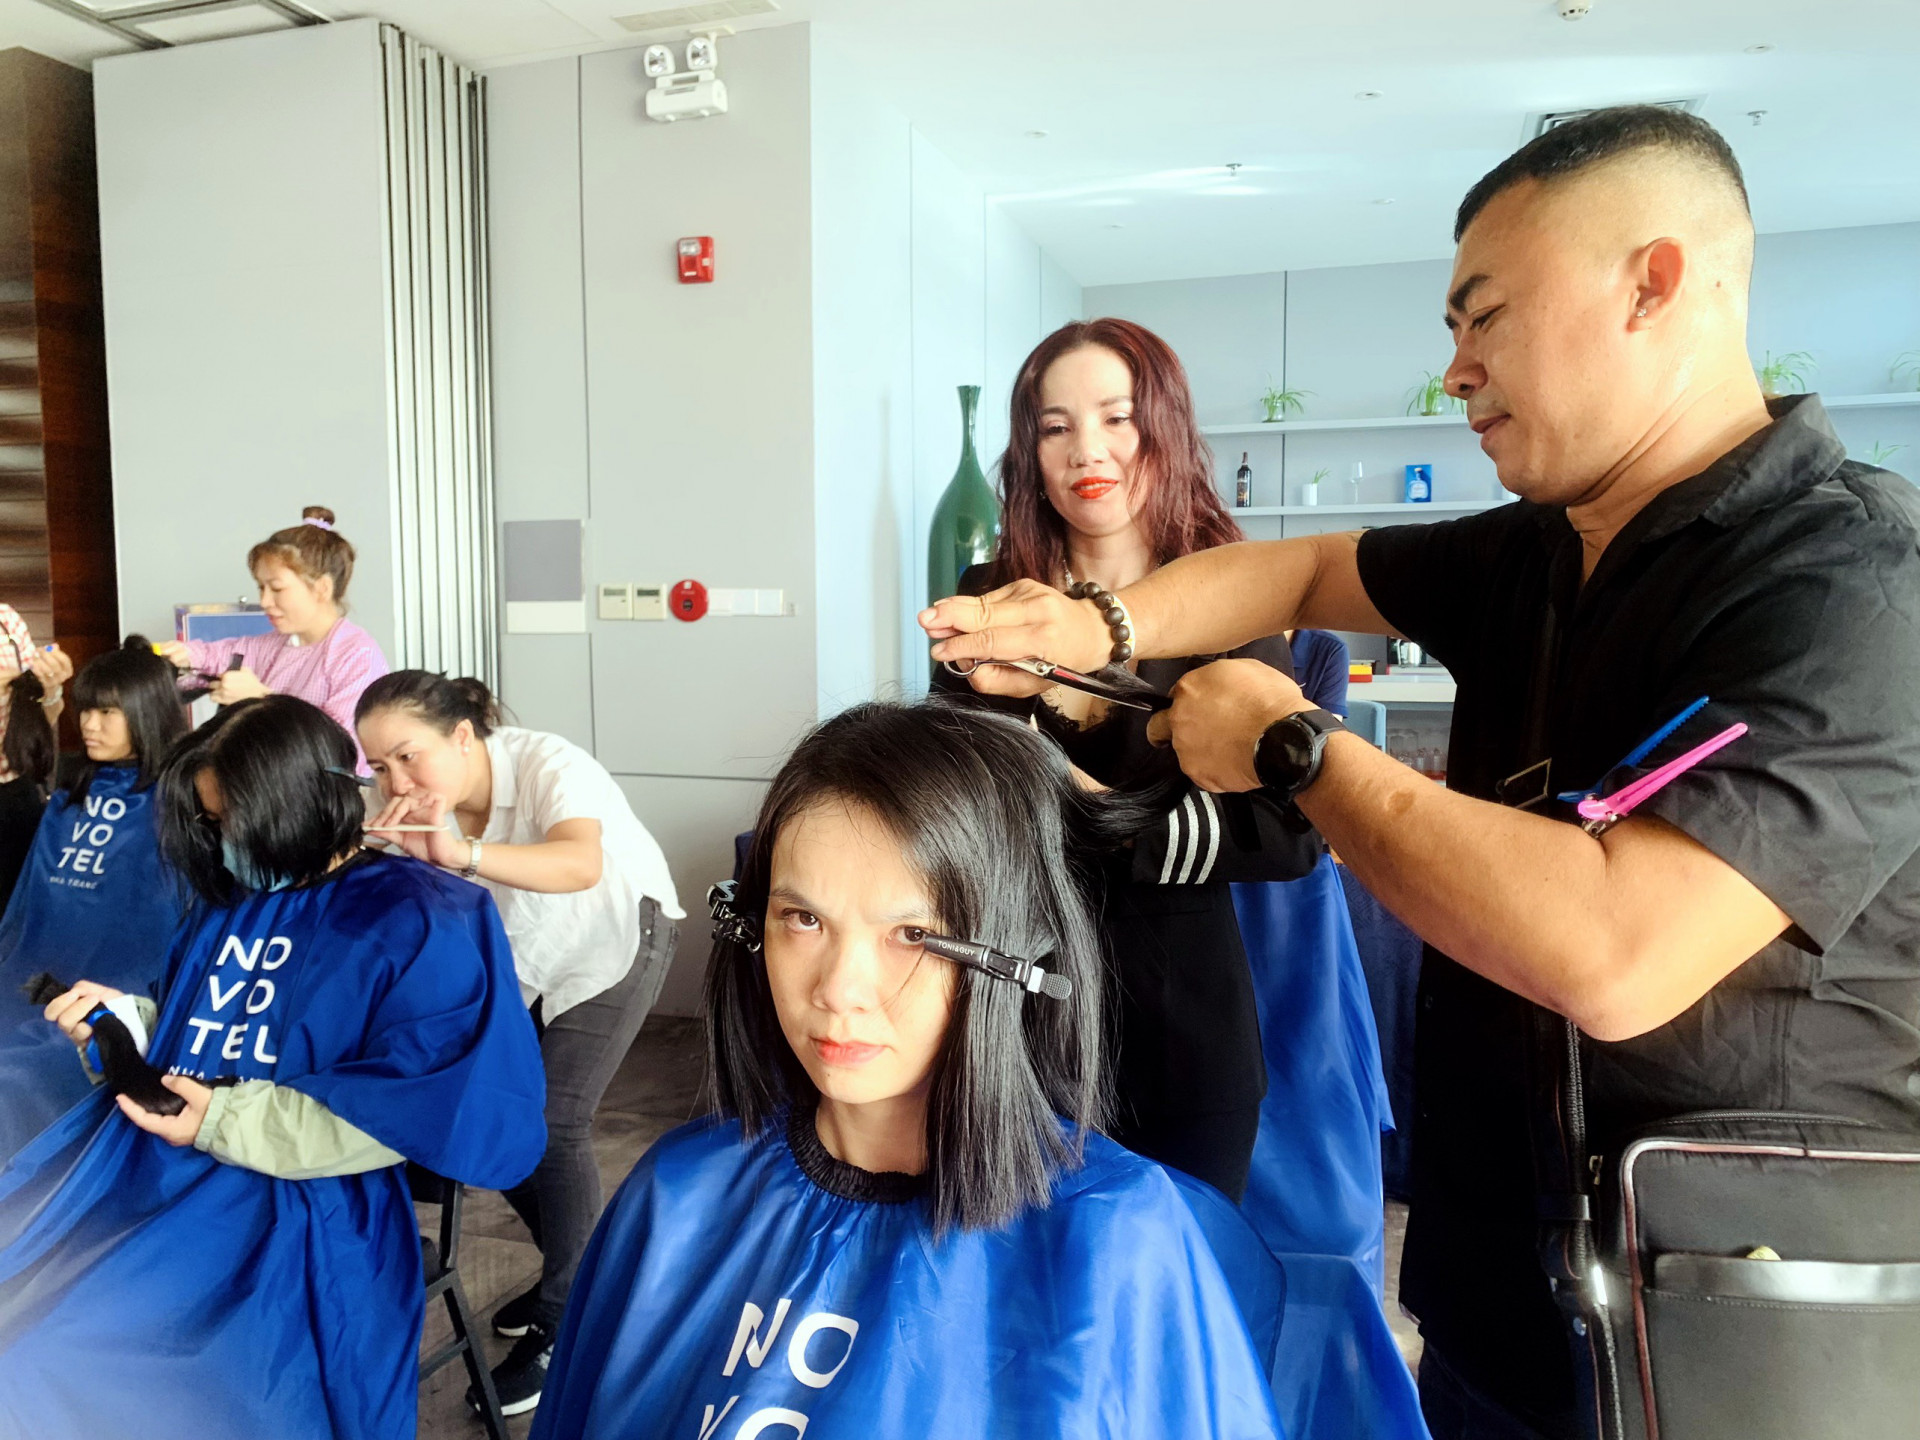 Sau khi cắt tóc, các tình nguyện viên sẽ tạo kiểu tóc phù hợp cho người tham gia hiến tóc.